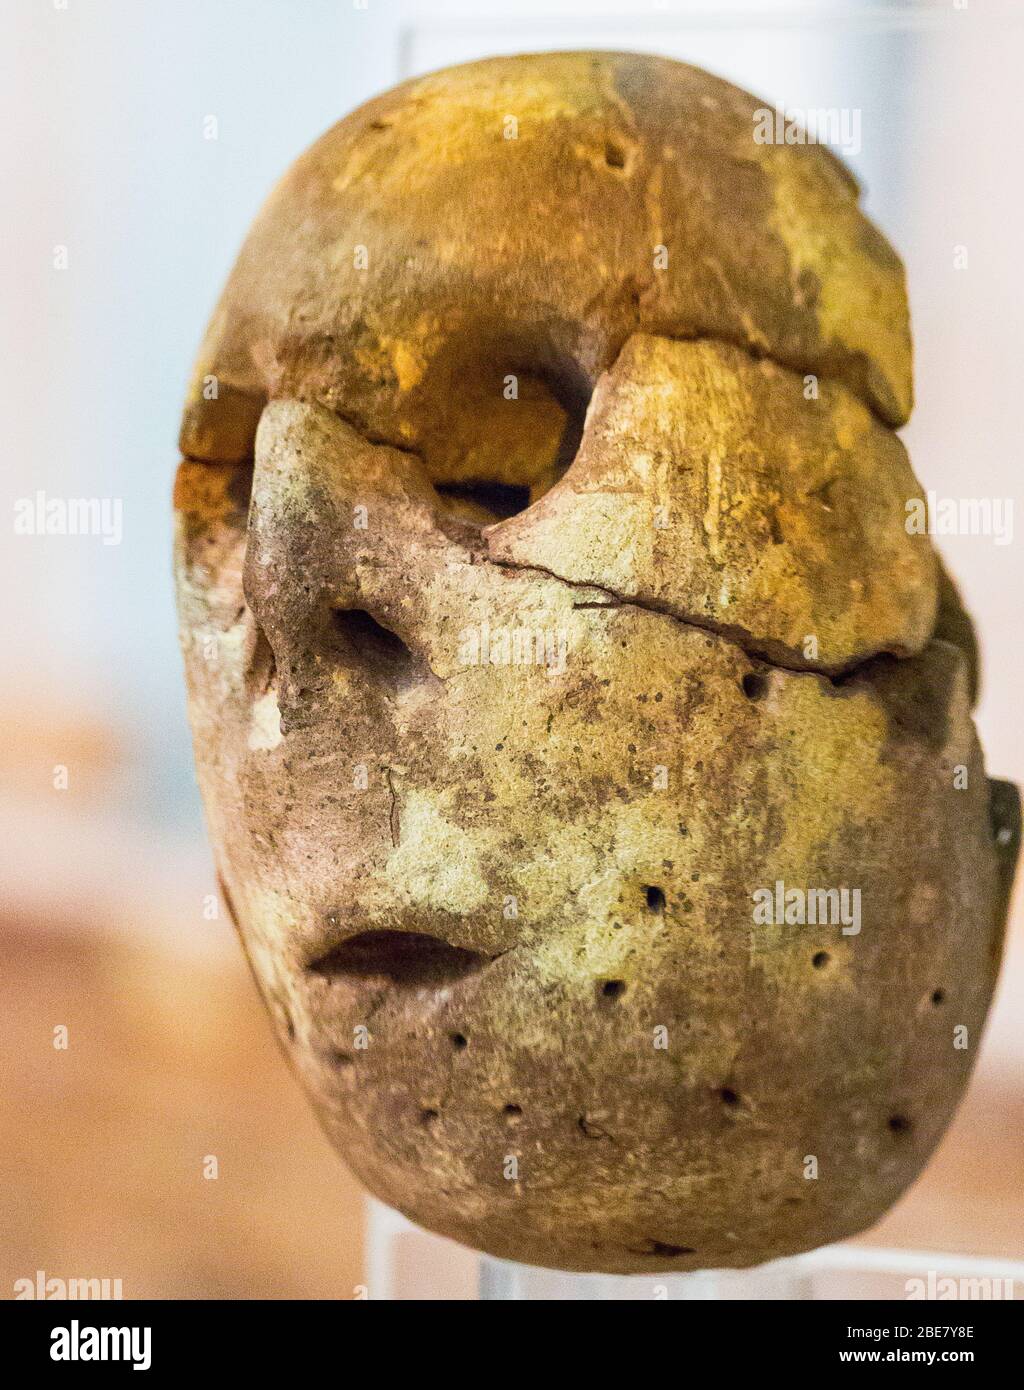 Ägypten, Kairo, Ägyptisches Museum, ein bemalter Tonkopf eines Idols. Prädynastische, maadi Kultur, gefunden in Merimde Beni Salame. Stockfoto